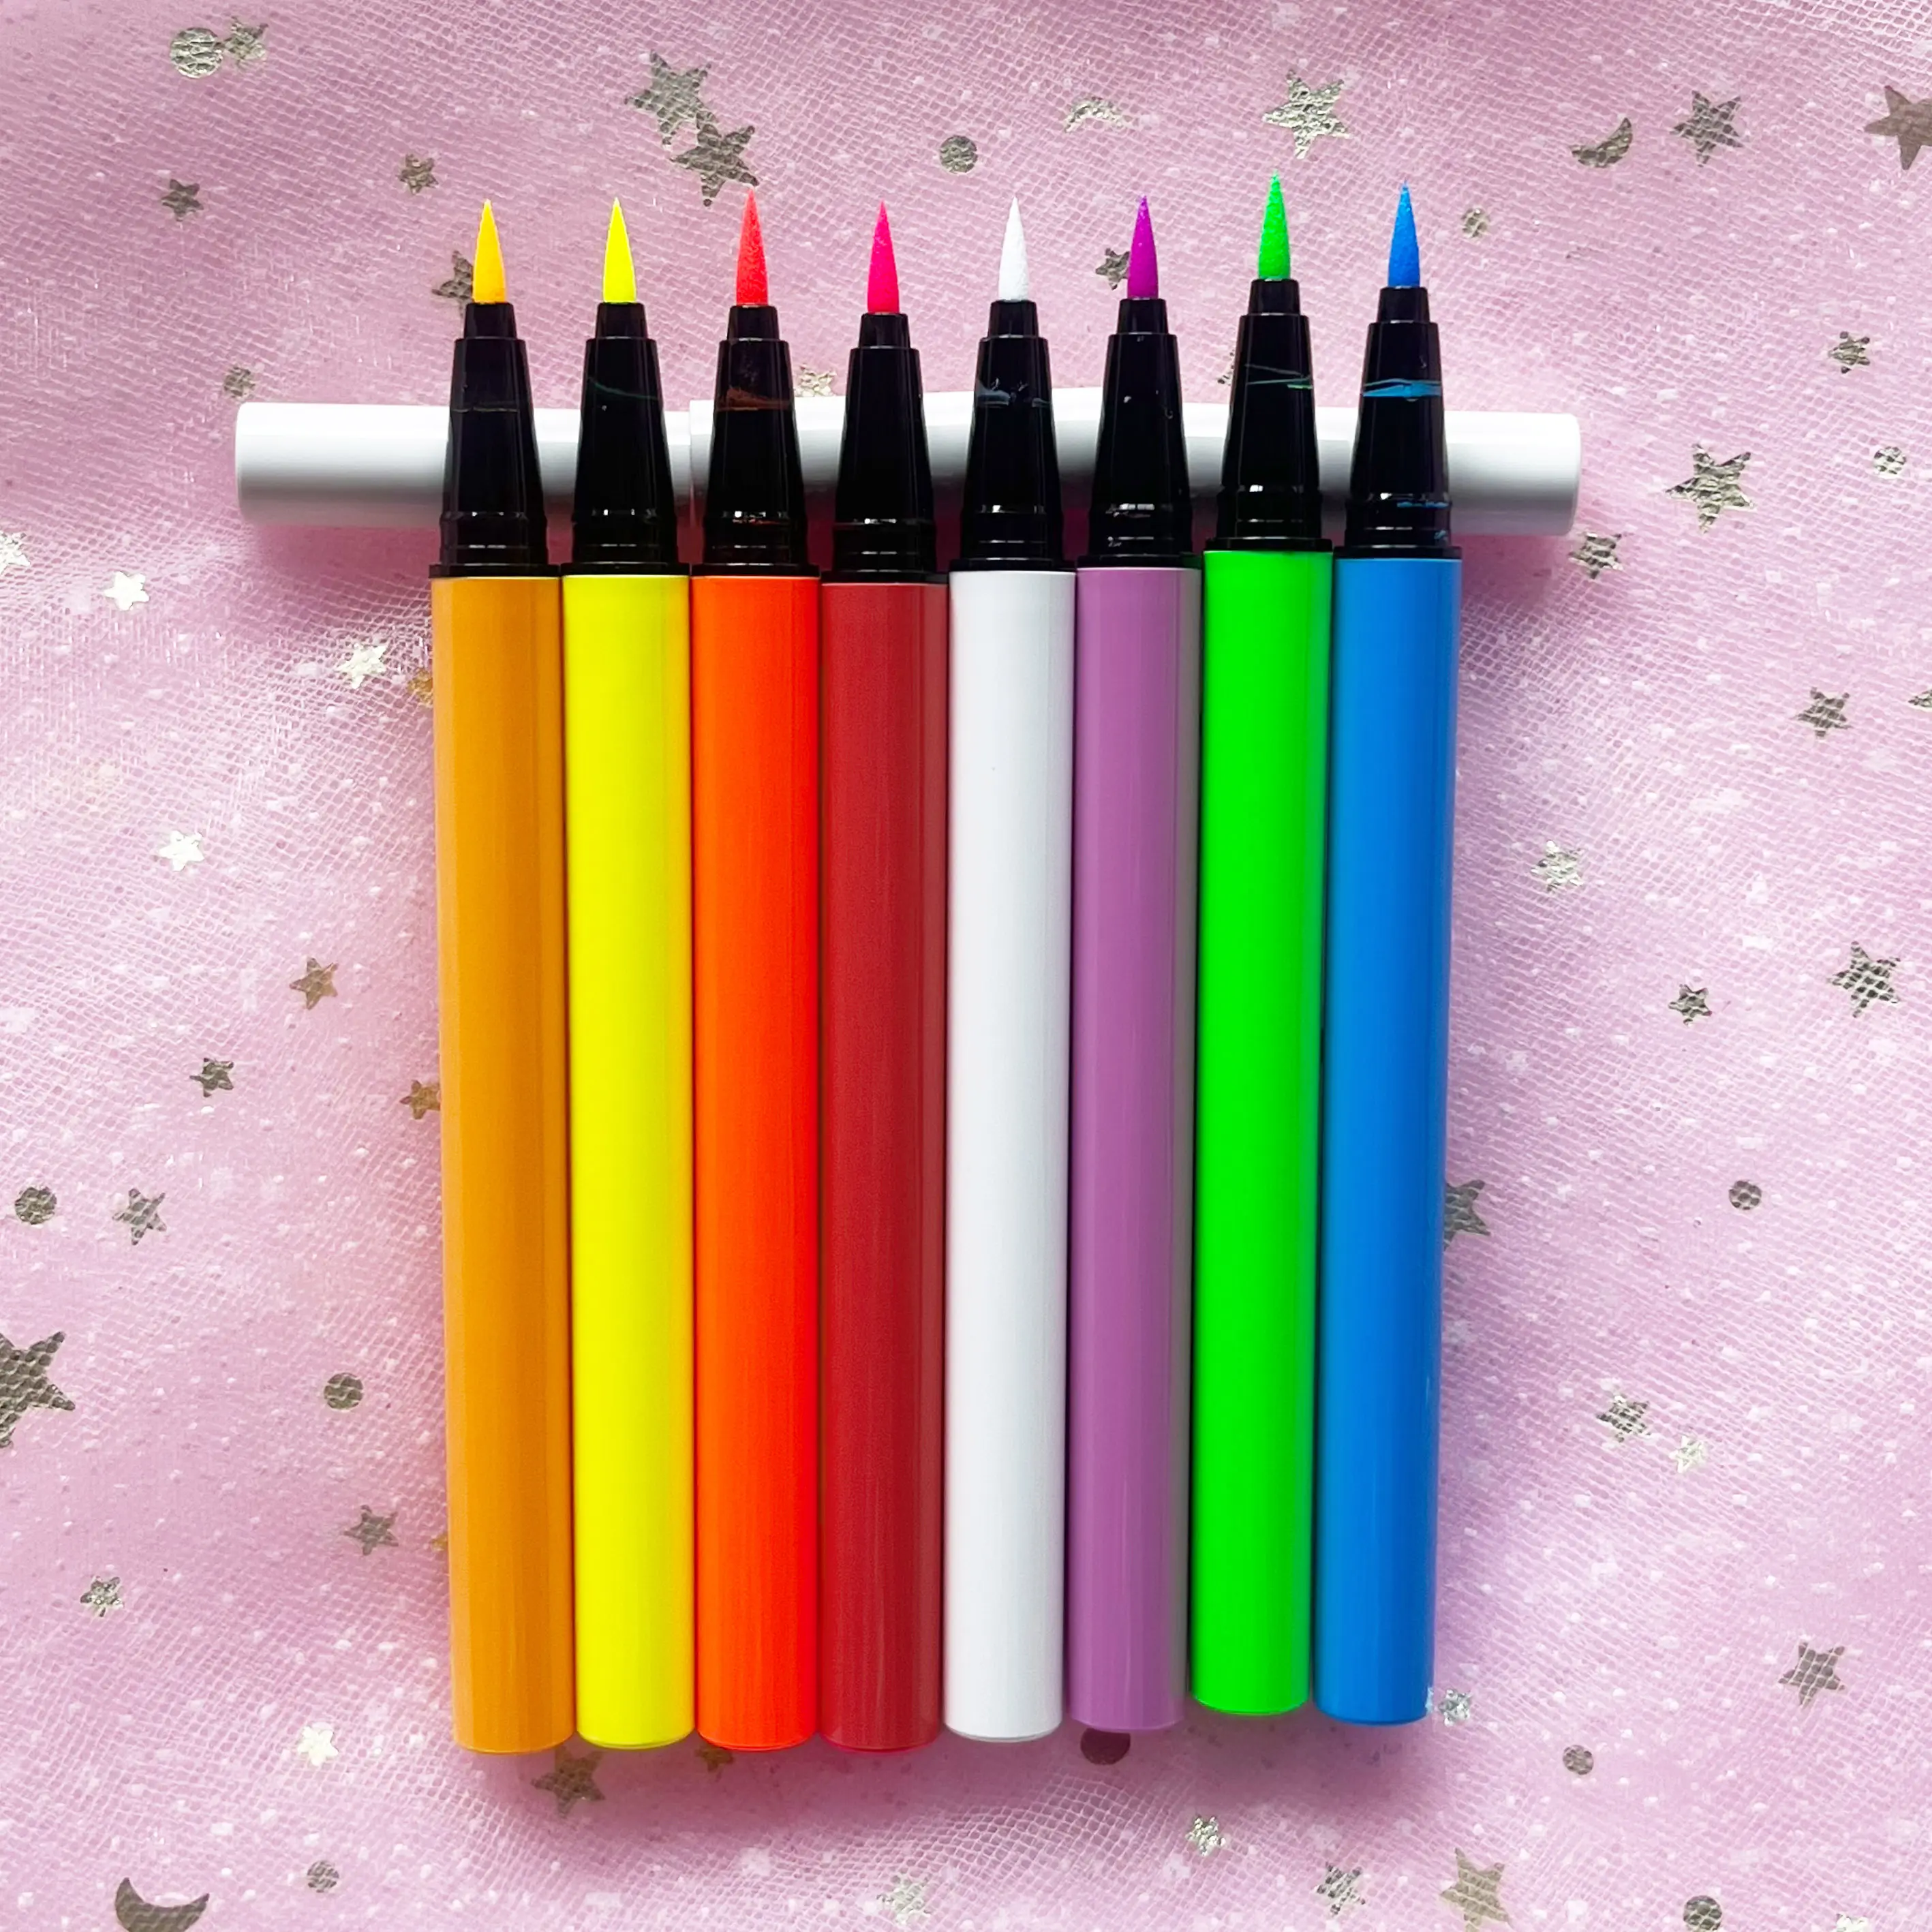 Özel aydınlık su geçirmez Neon jel sıvı Eyeliner kalem günlük kullanım için uzun ömürlü Mineral makyaj yüksek kalite aydınlık kalem